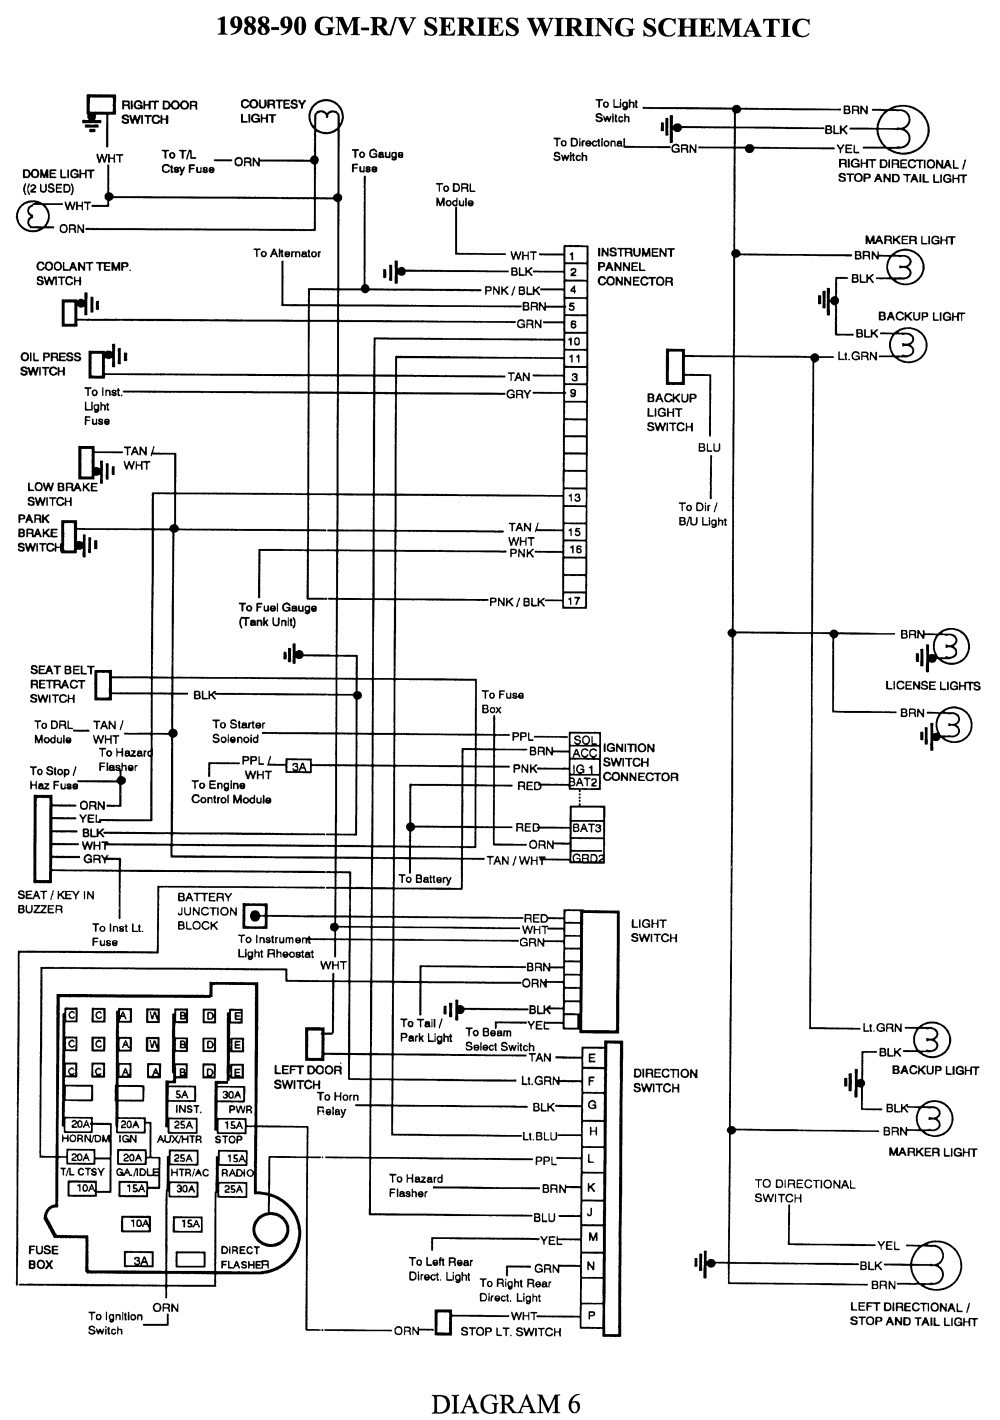 turn signal wiring diagram lovely jcb 3 0d 4 4 3 5d 4 4 teletruk of turn signal wiring diagram 1